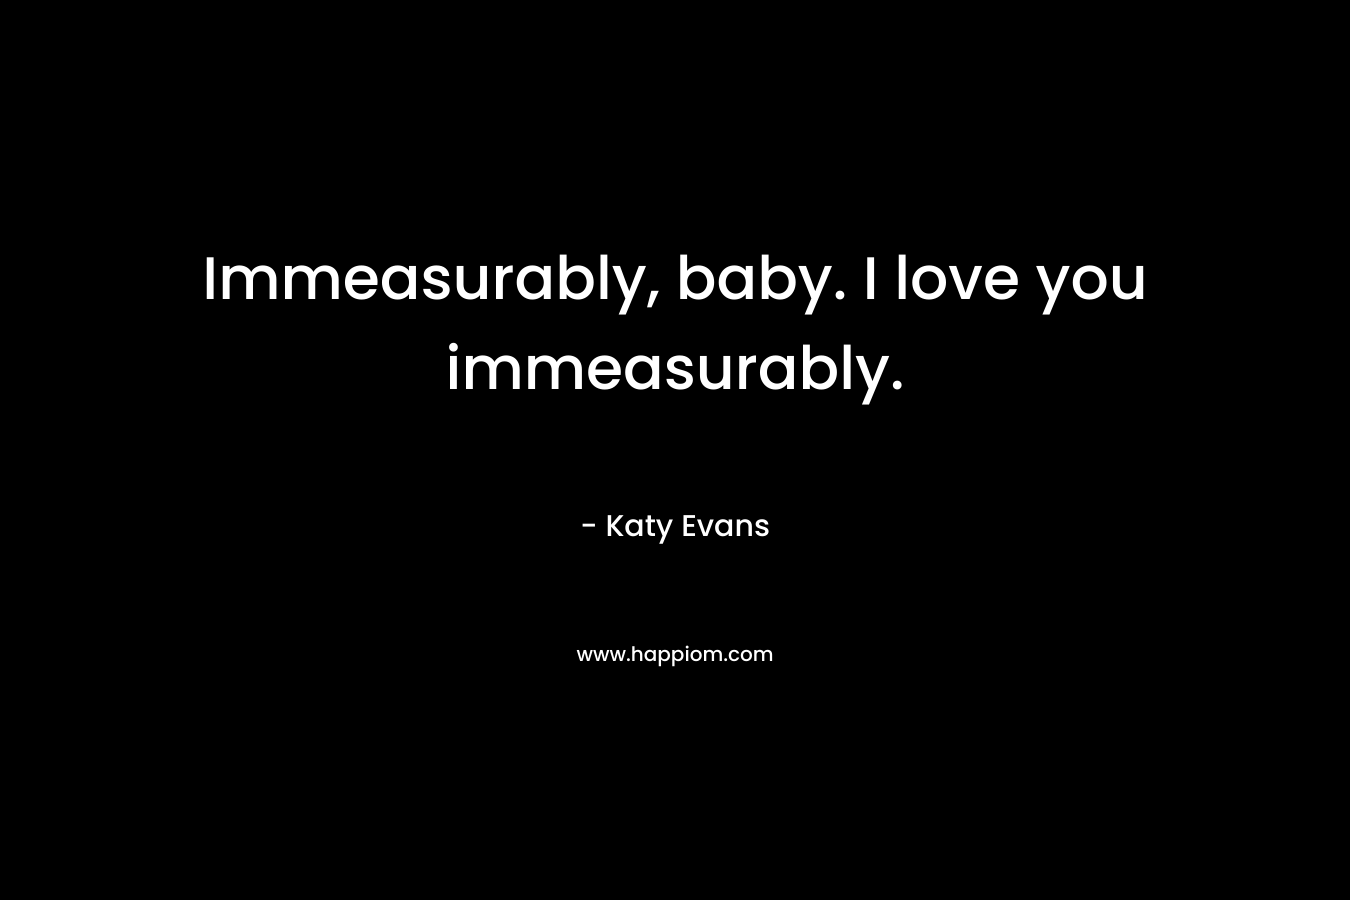 Immeasurably, baby. I love you immeasurably. – Katy Evans